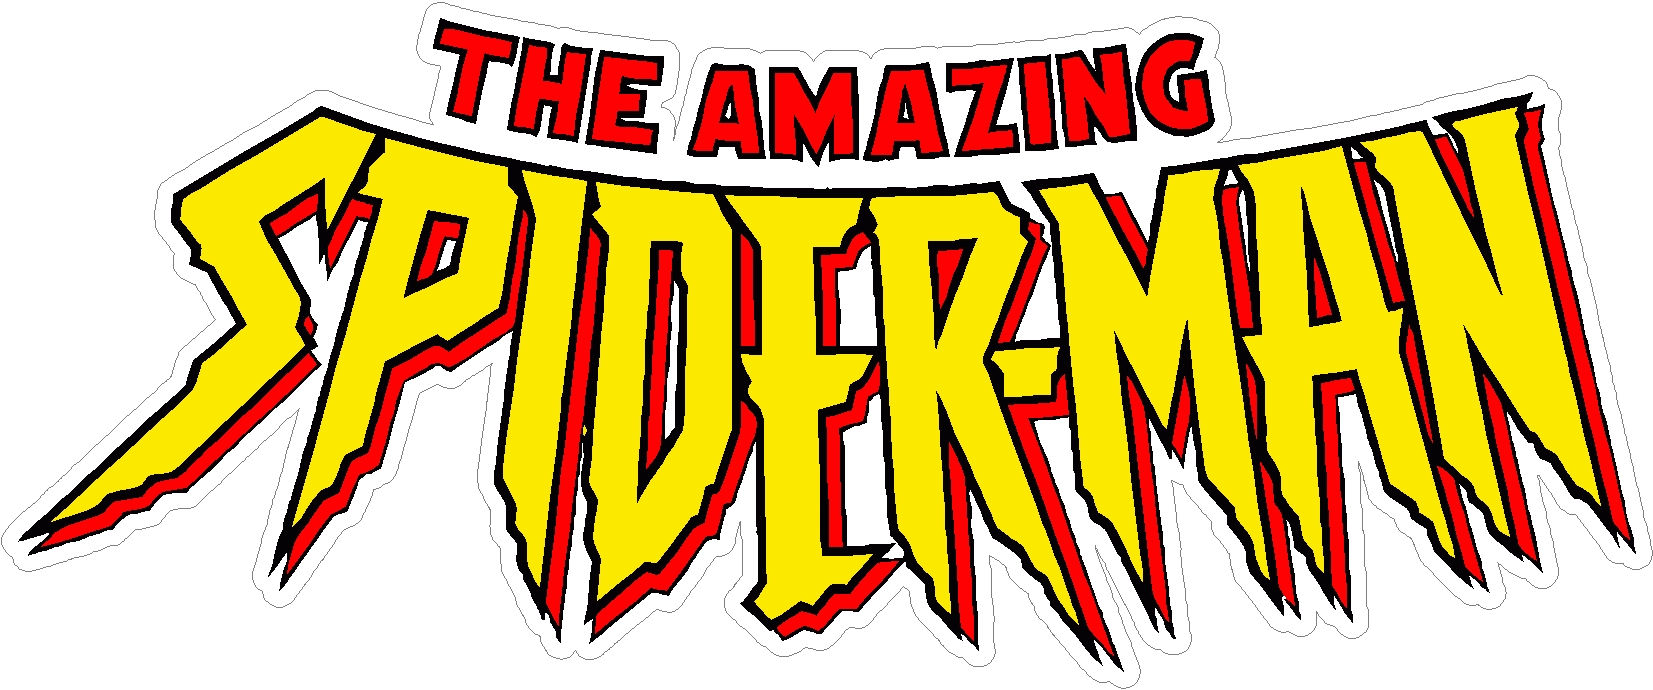 spiderman logo Spider man official logo marvelstudios jpg